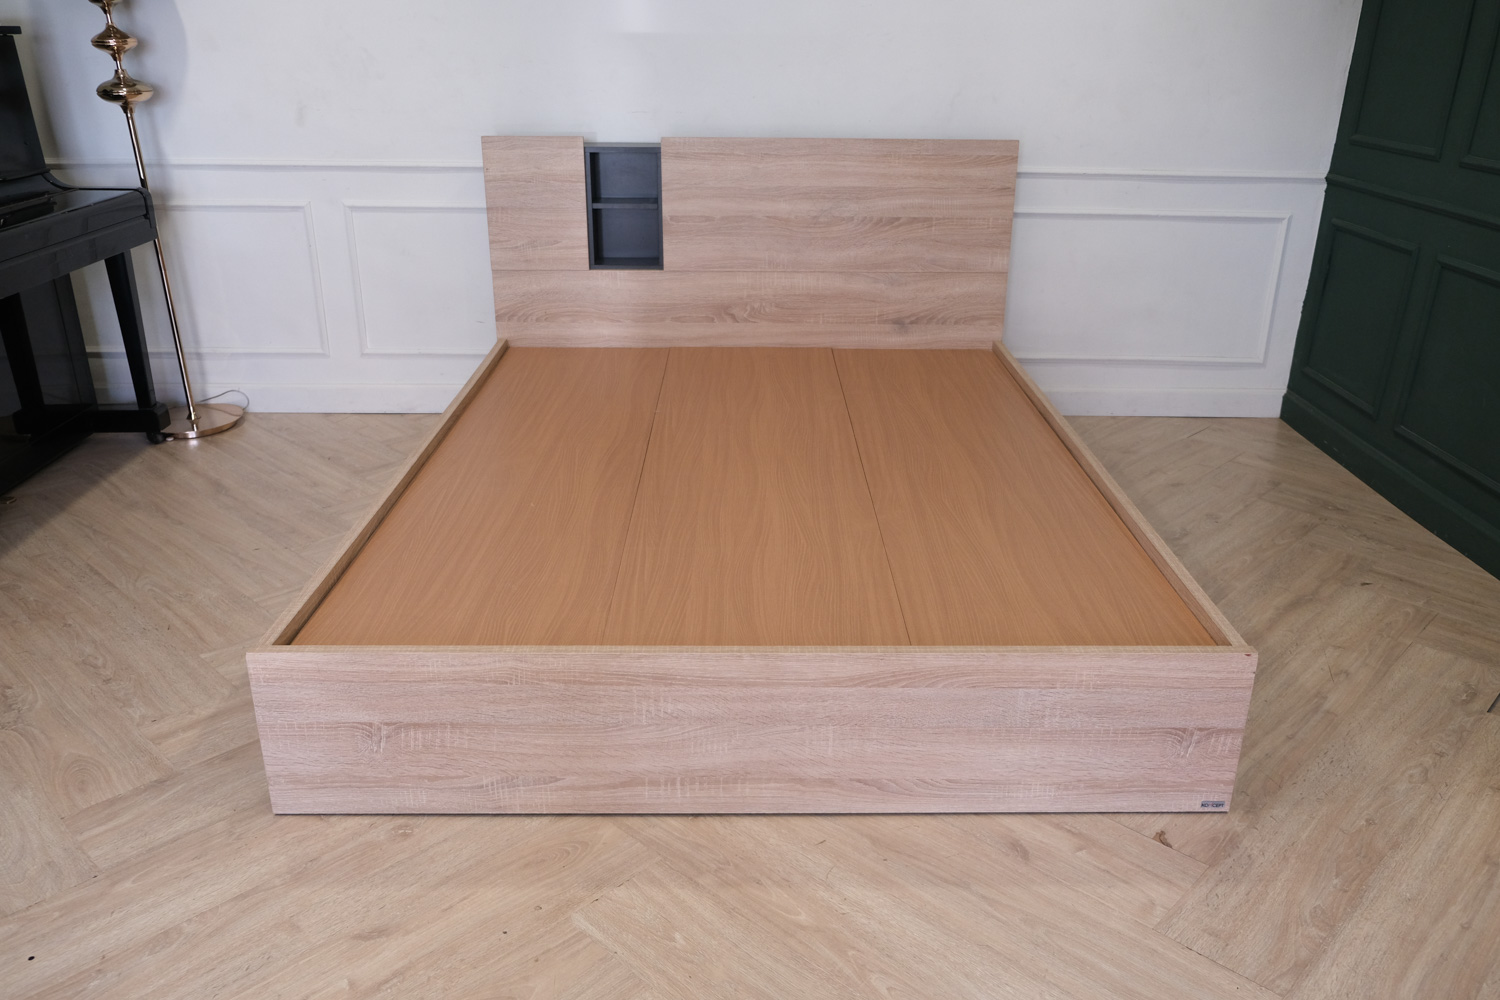 เตียงโครงไม้ 5 ฟุต มีชั้นวางหัวเตียง แบรนด์ koncept(1)